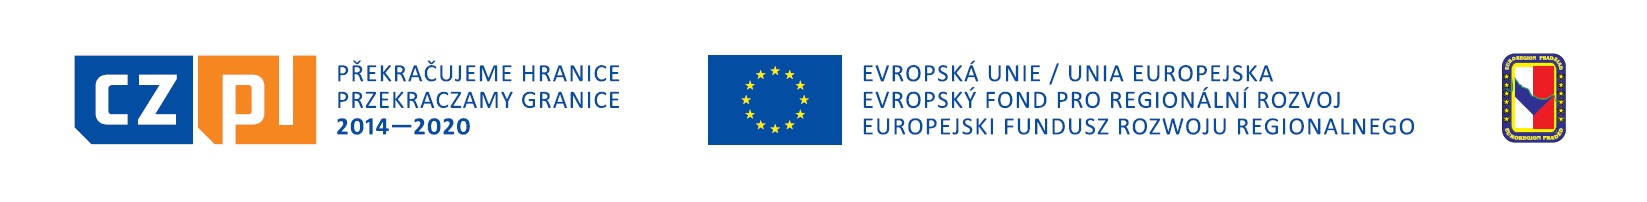 logo EU PR 2019